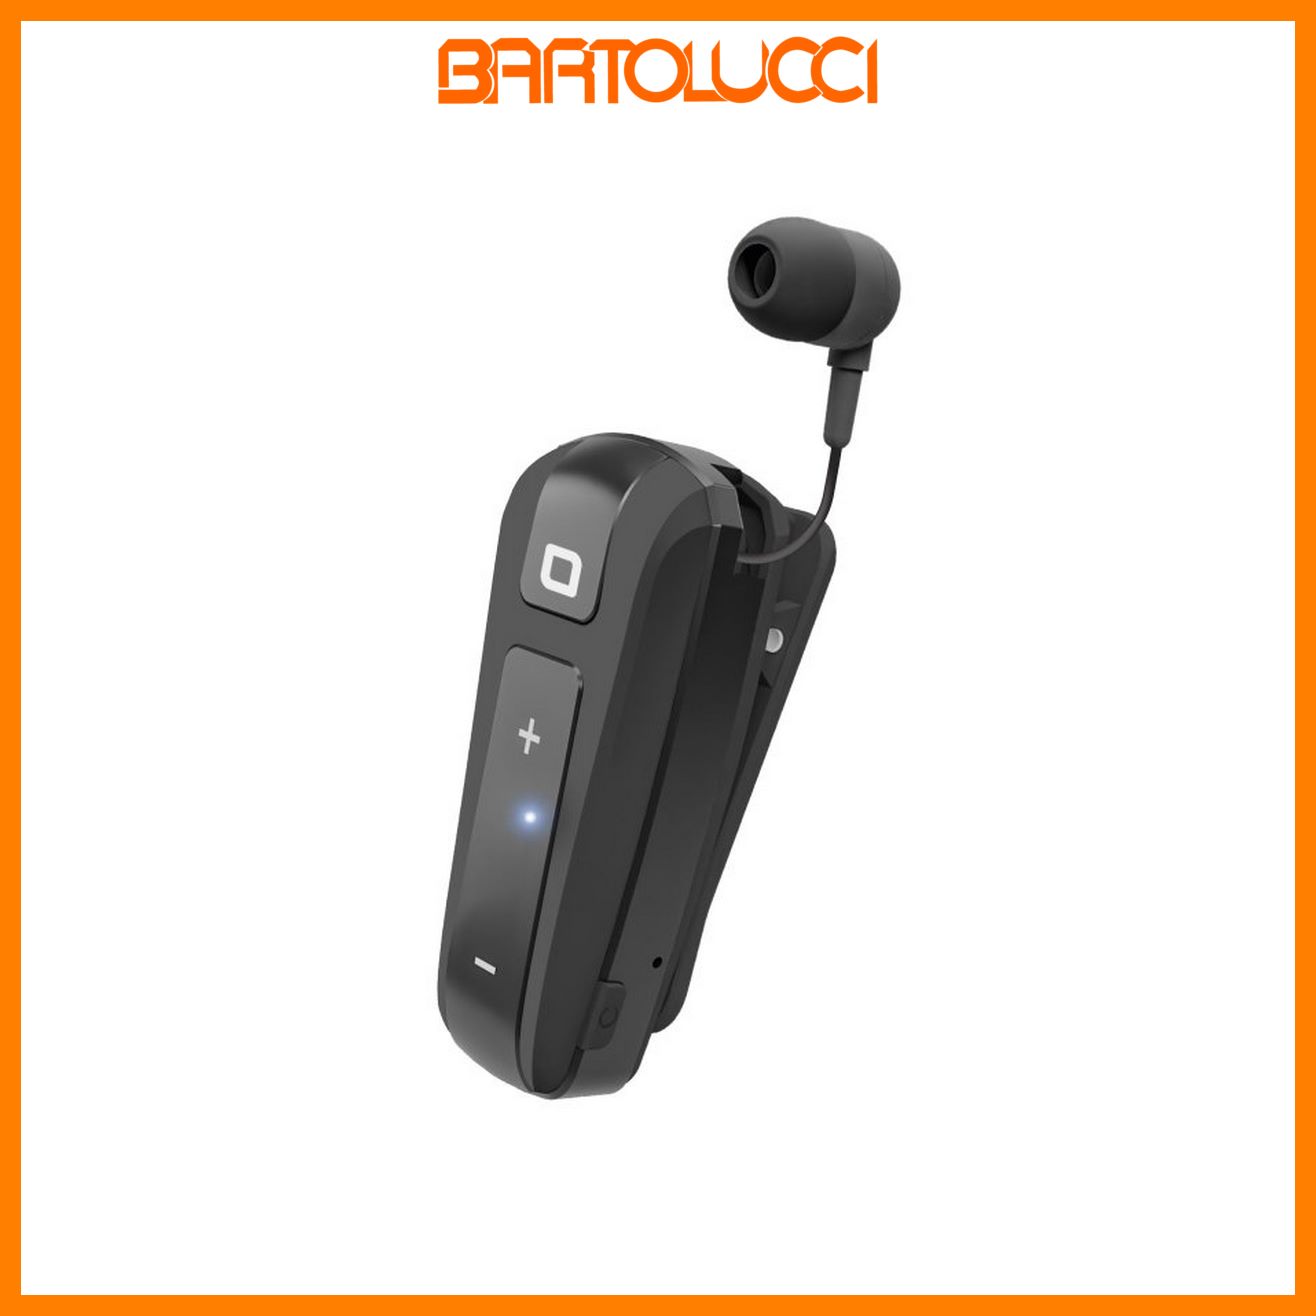 SBS TEROLLCLIPBTK Auricolare Wireless con roller clip Colore nero